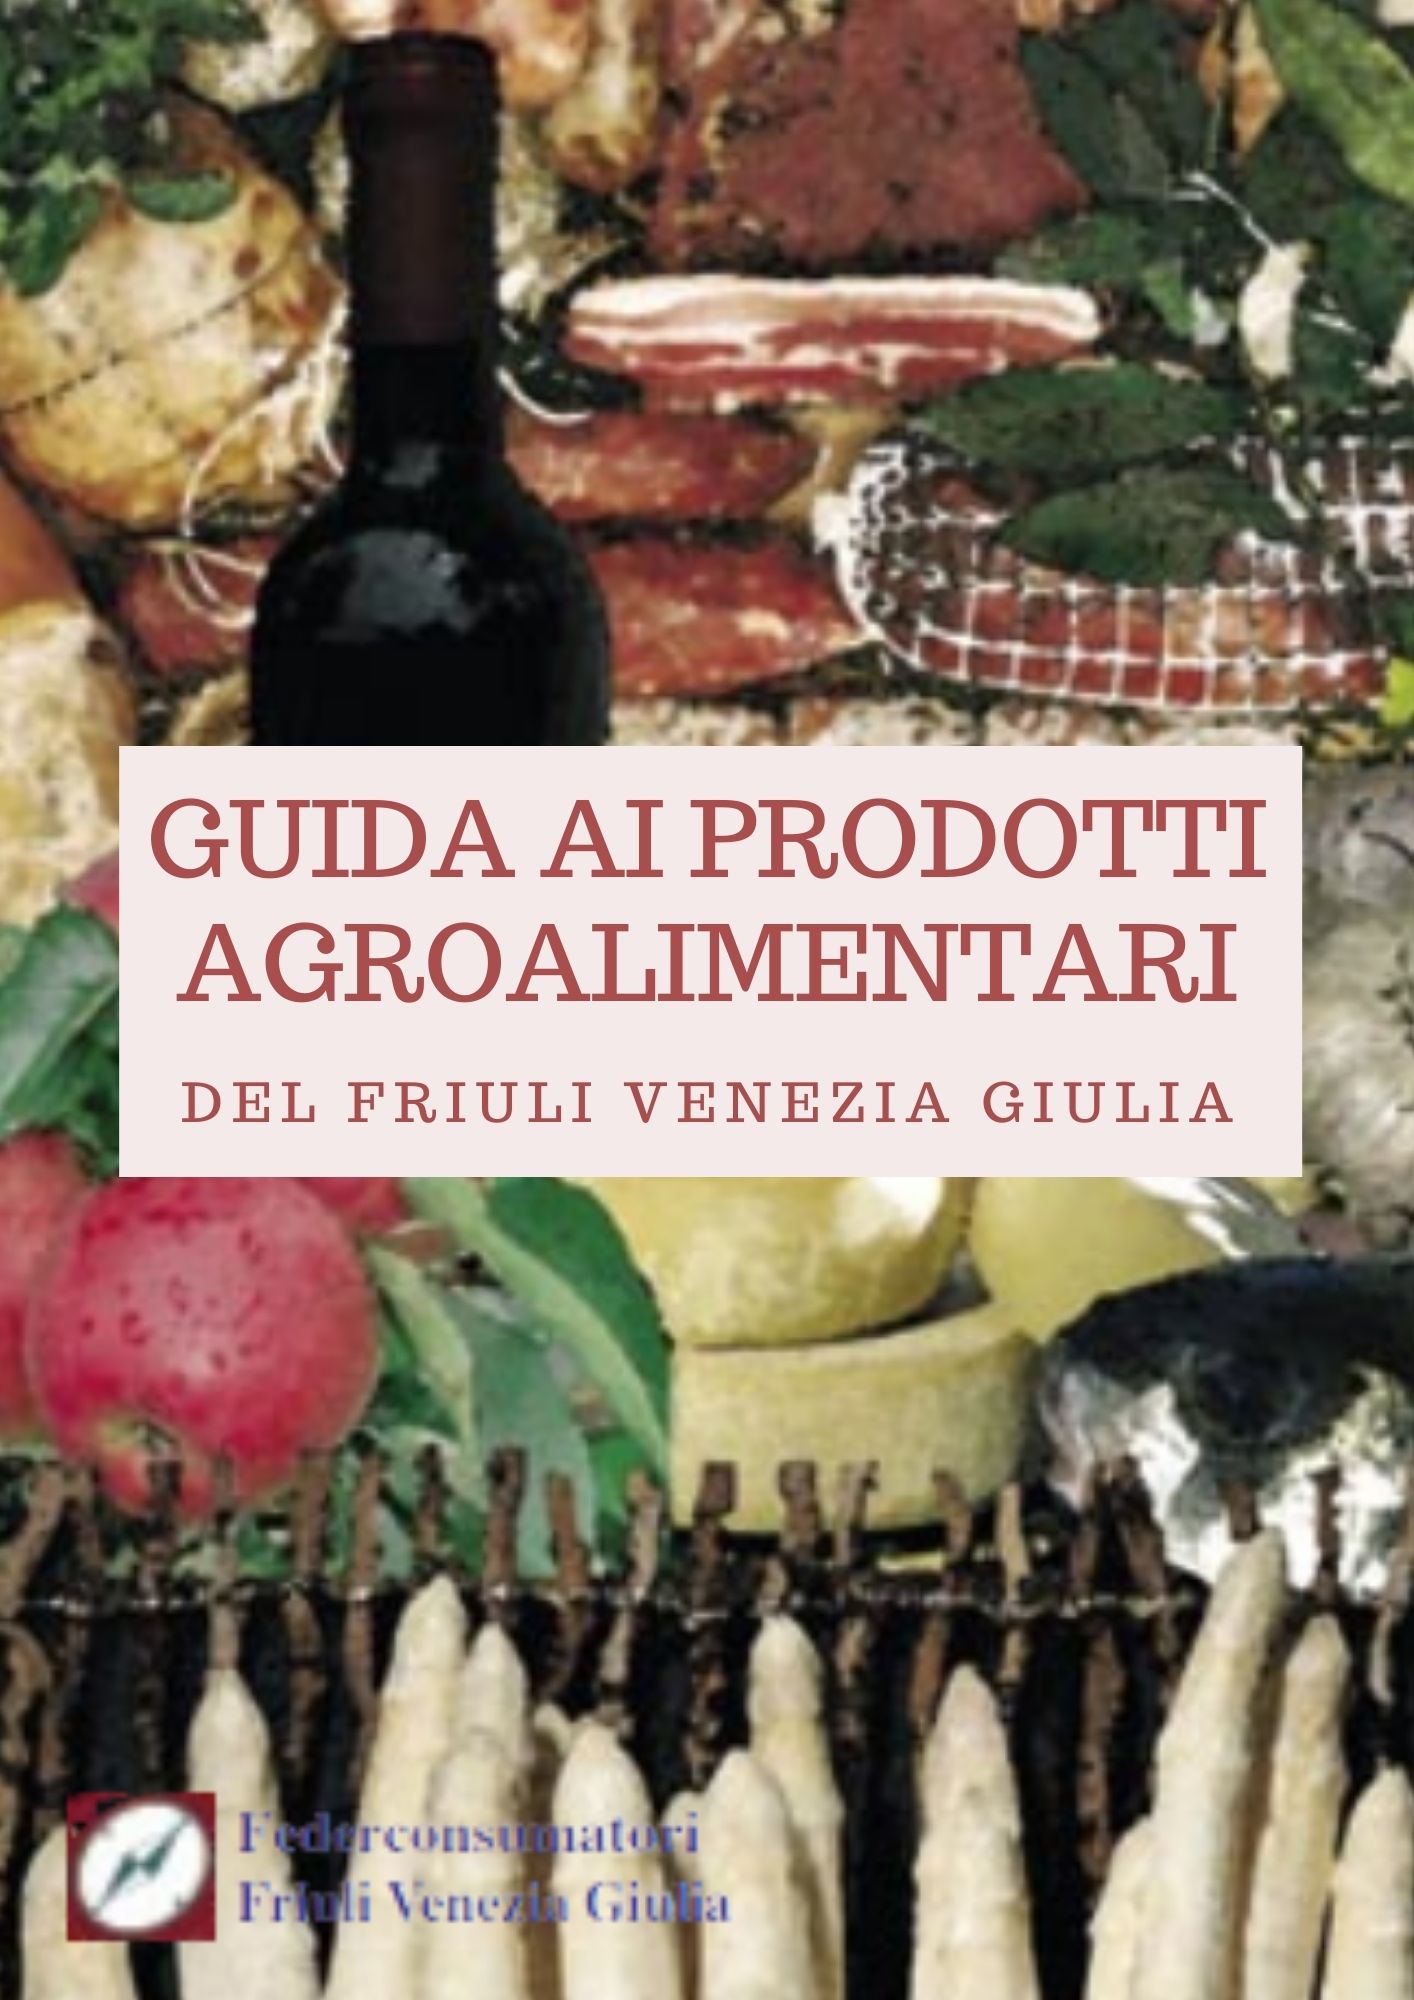 Guida a prodotti agroalimentari del Friuli Venezia Giulia